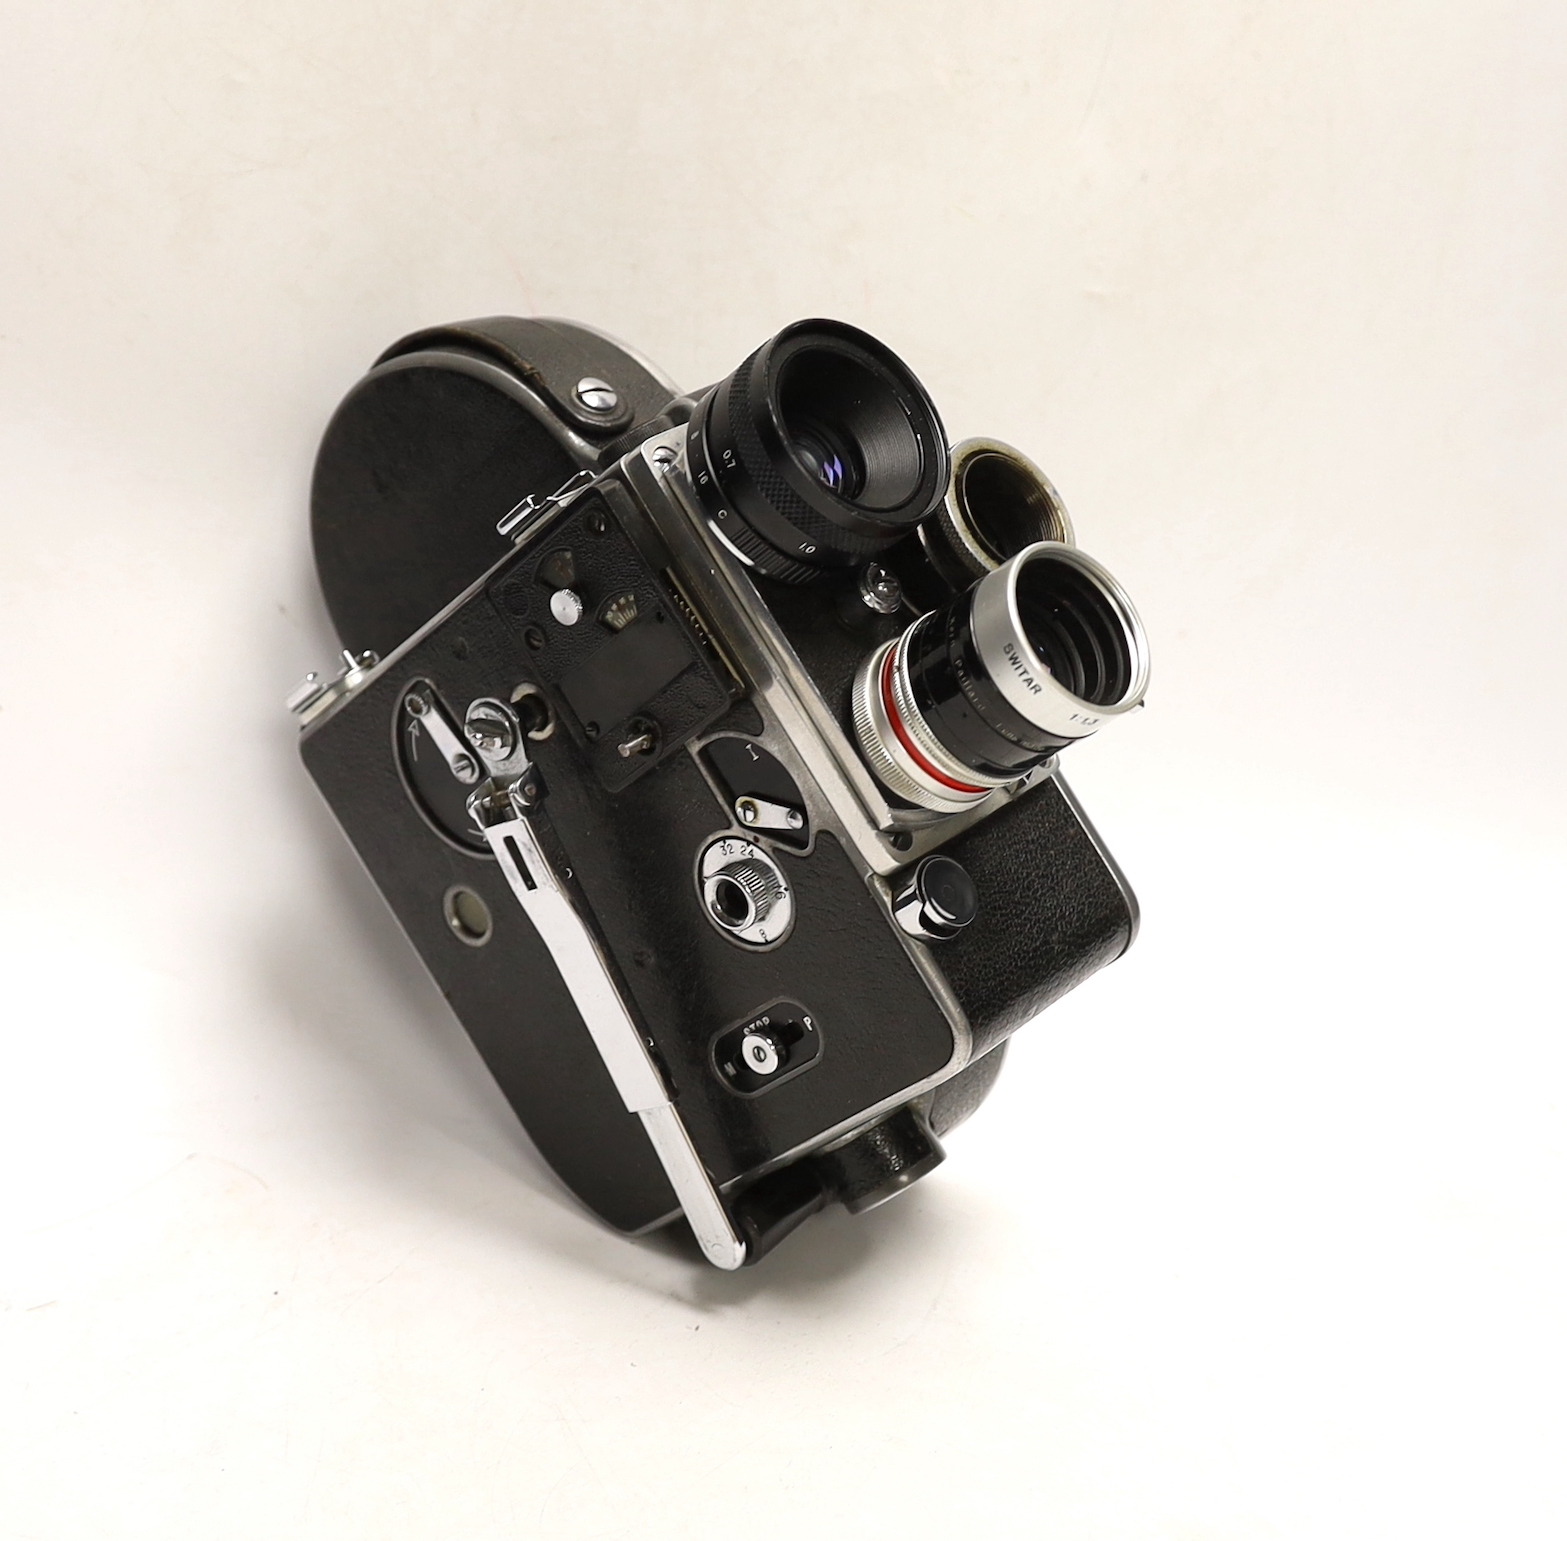 A Paillard Bolex H16 16mm cine camera in its case with lenses